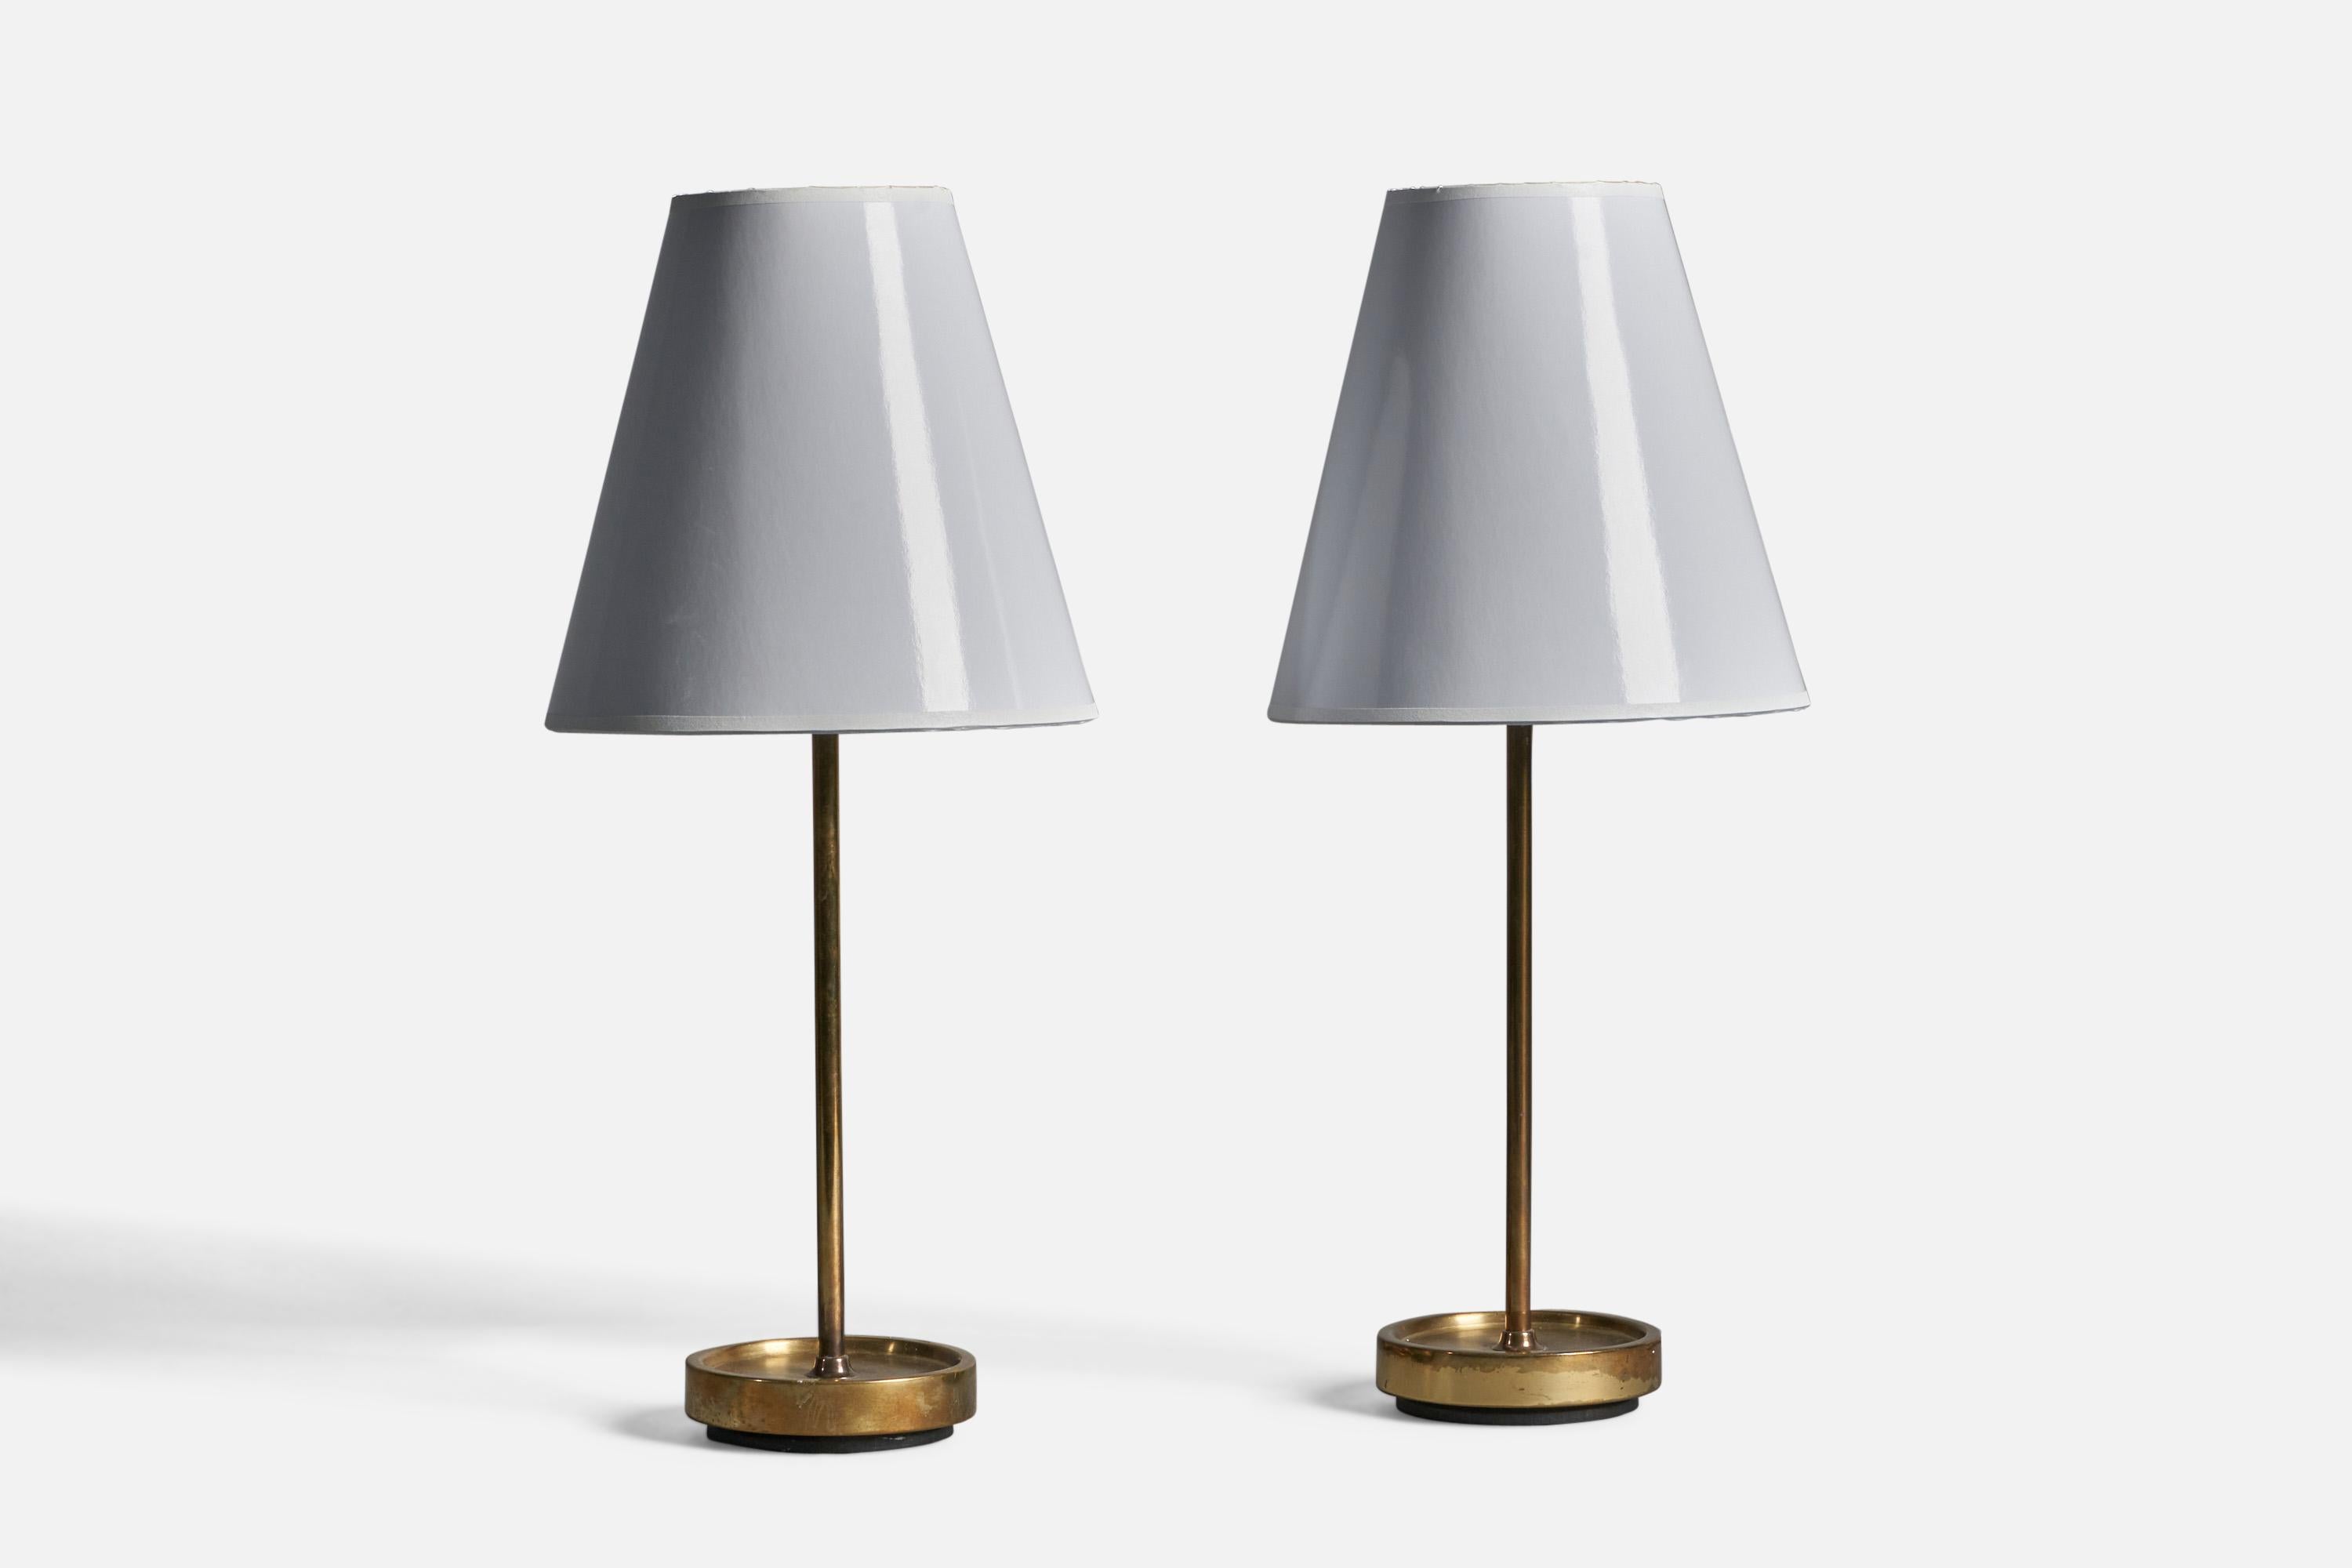 Paire de lampes de table en laiton conçues et produites en Suède, années 1950.

Dimensions de la lampe (pouces) : 14.75